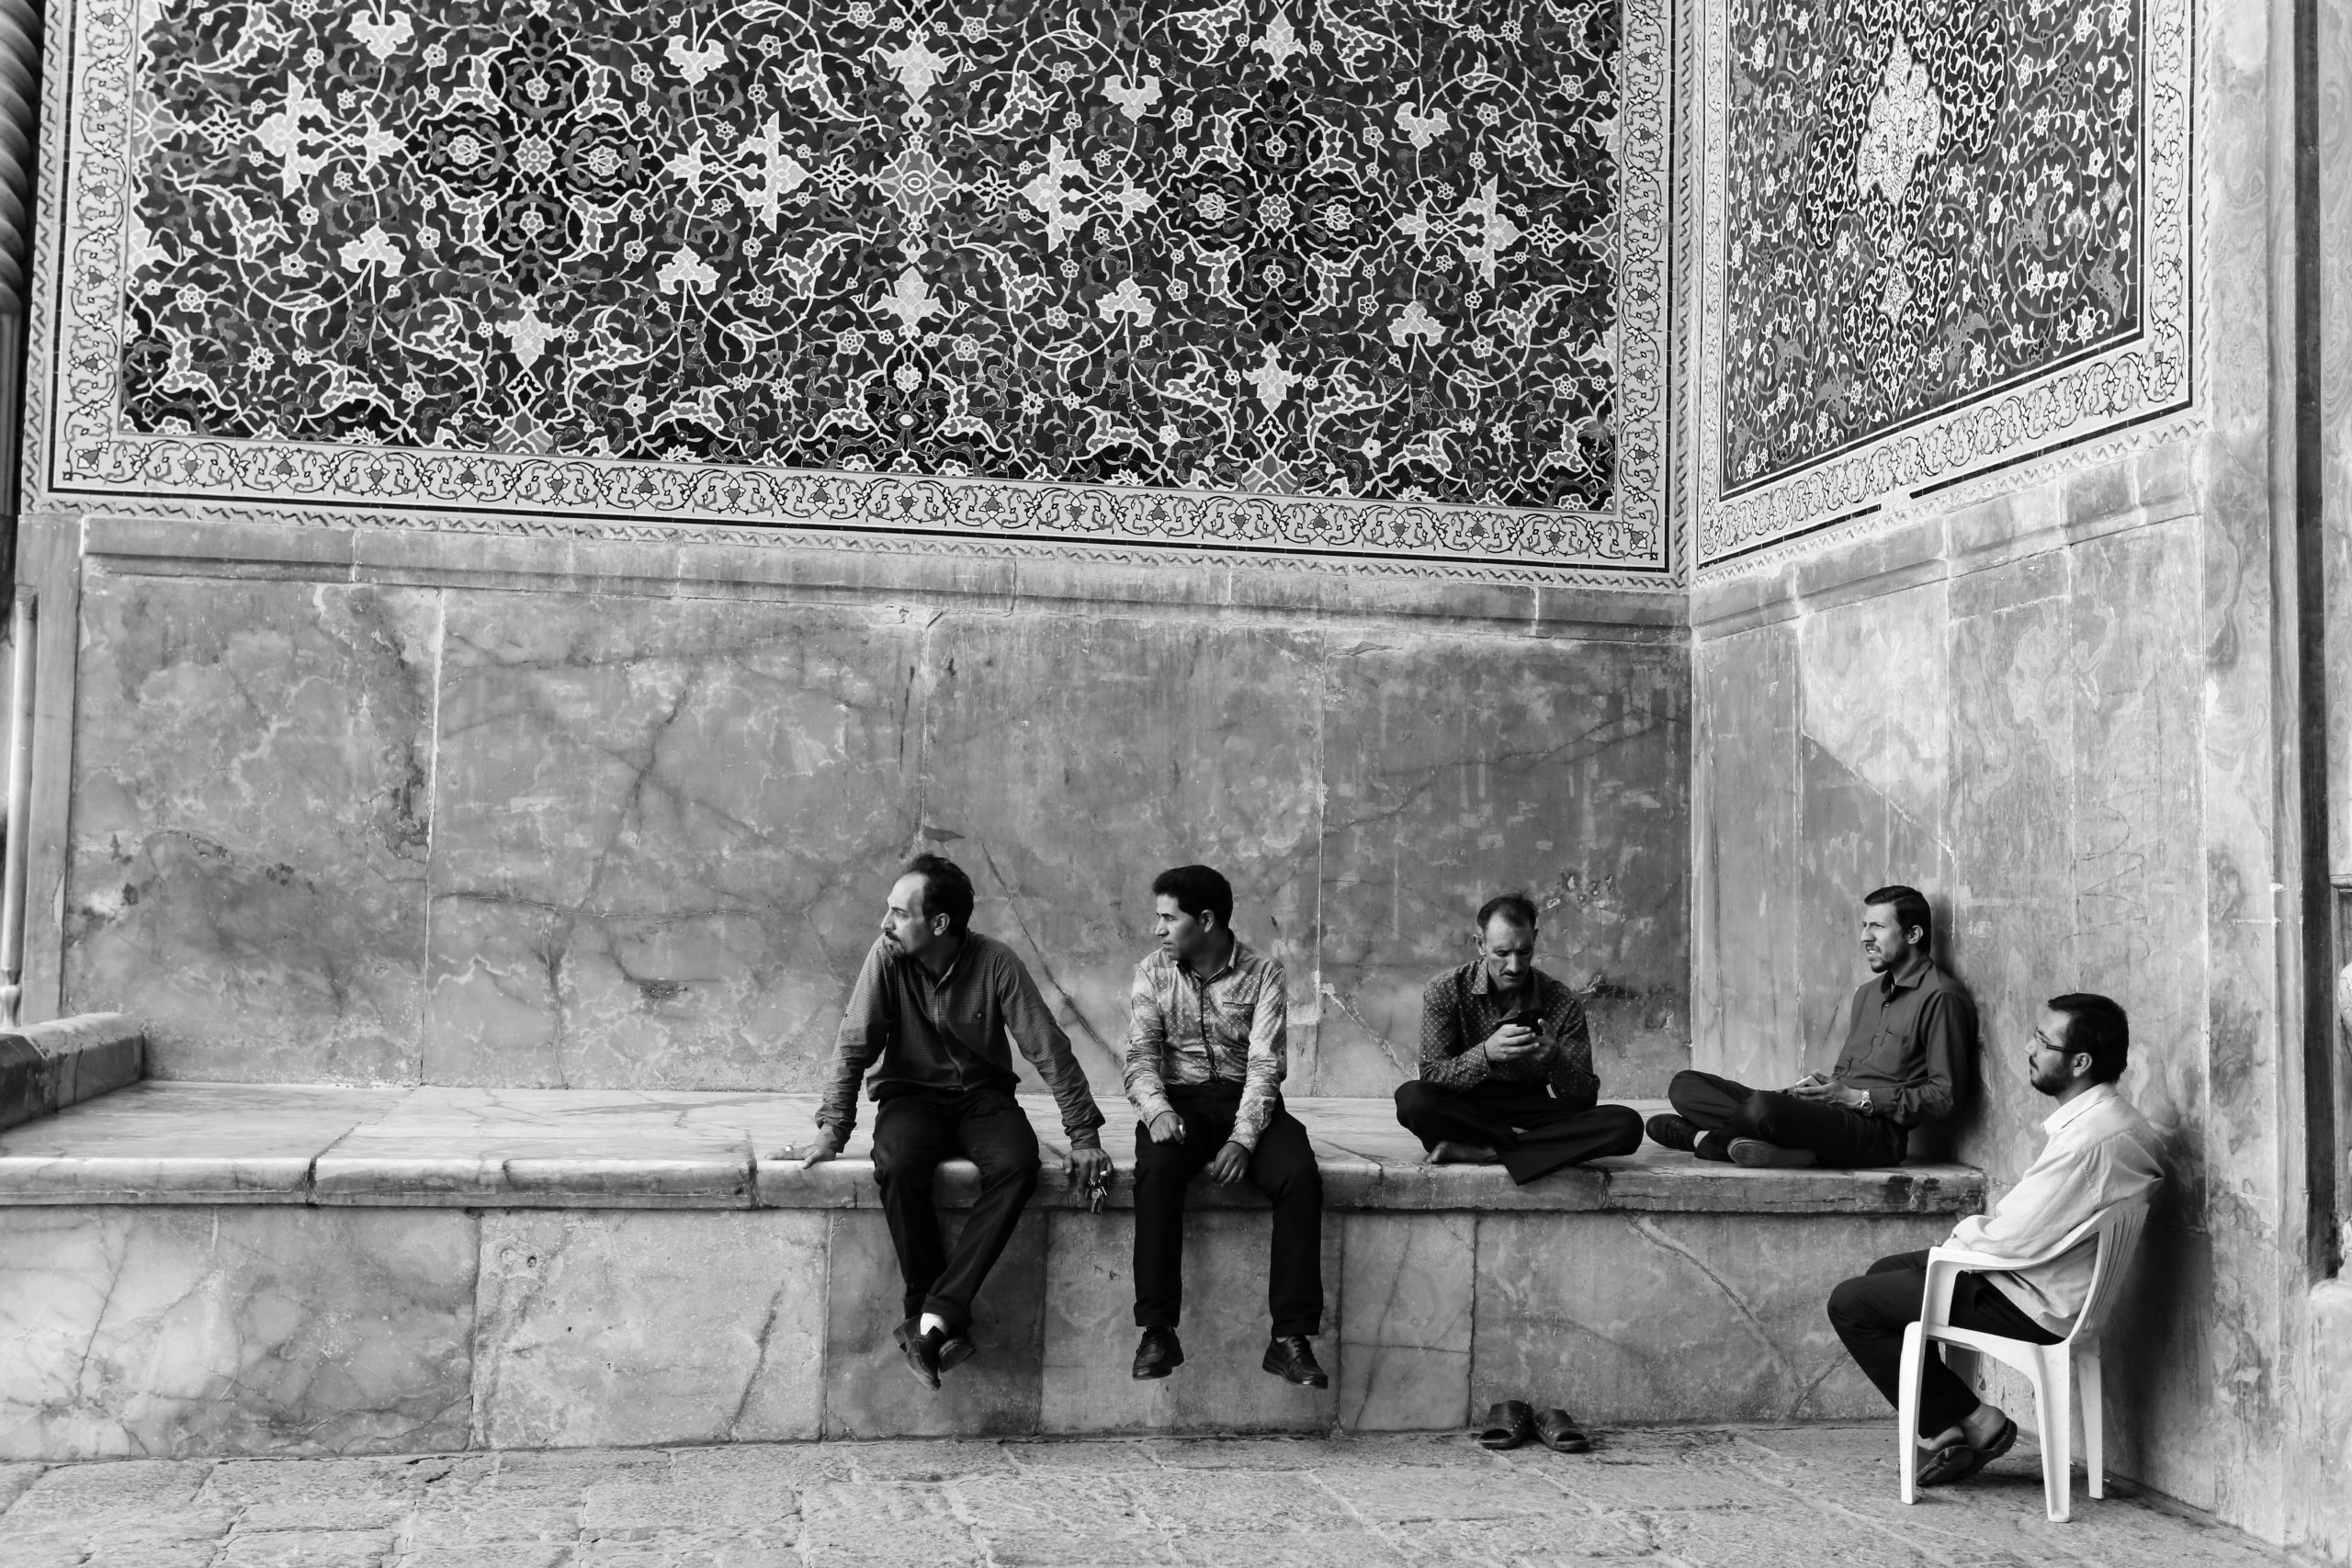 Isfahan, Iran. 